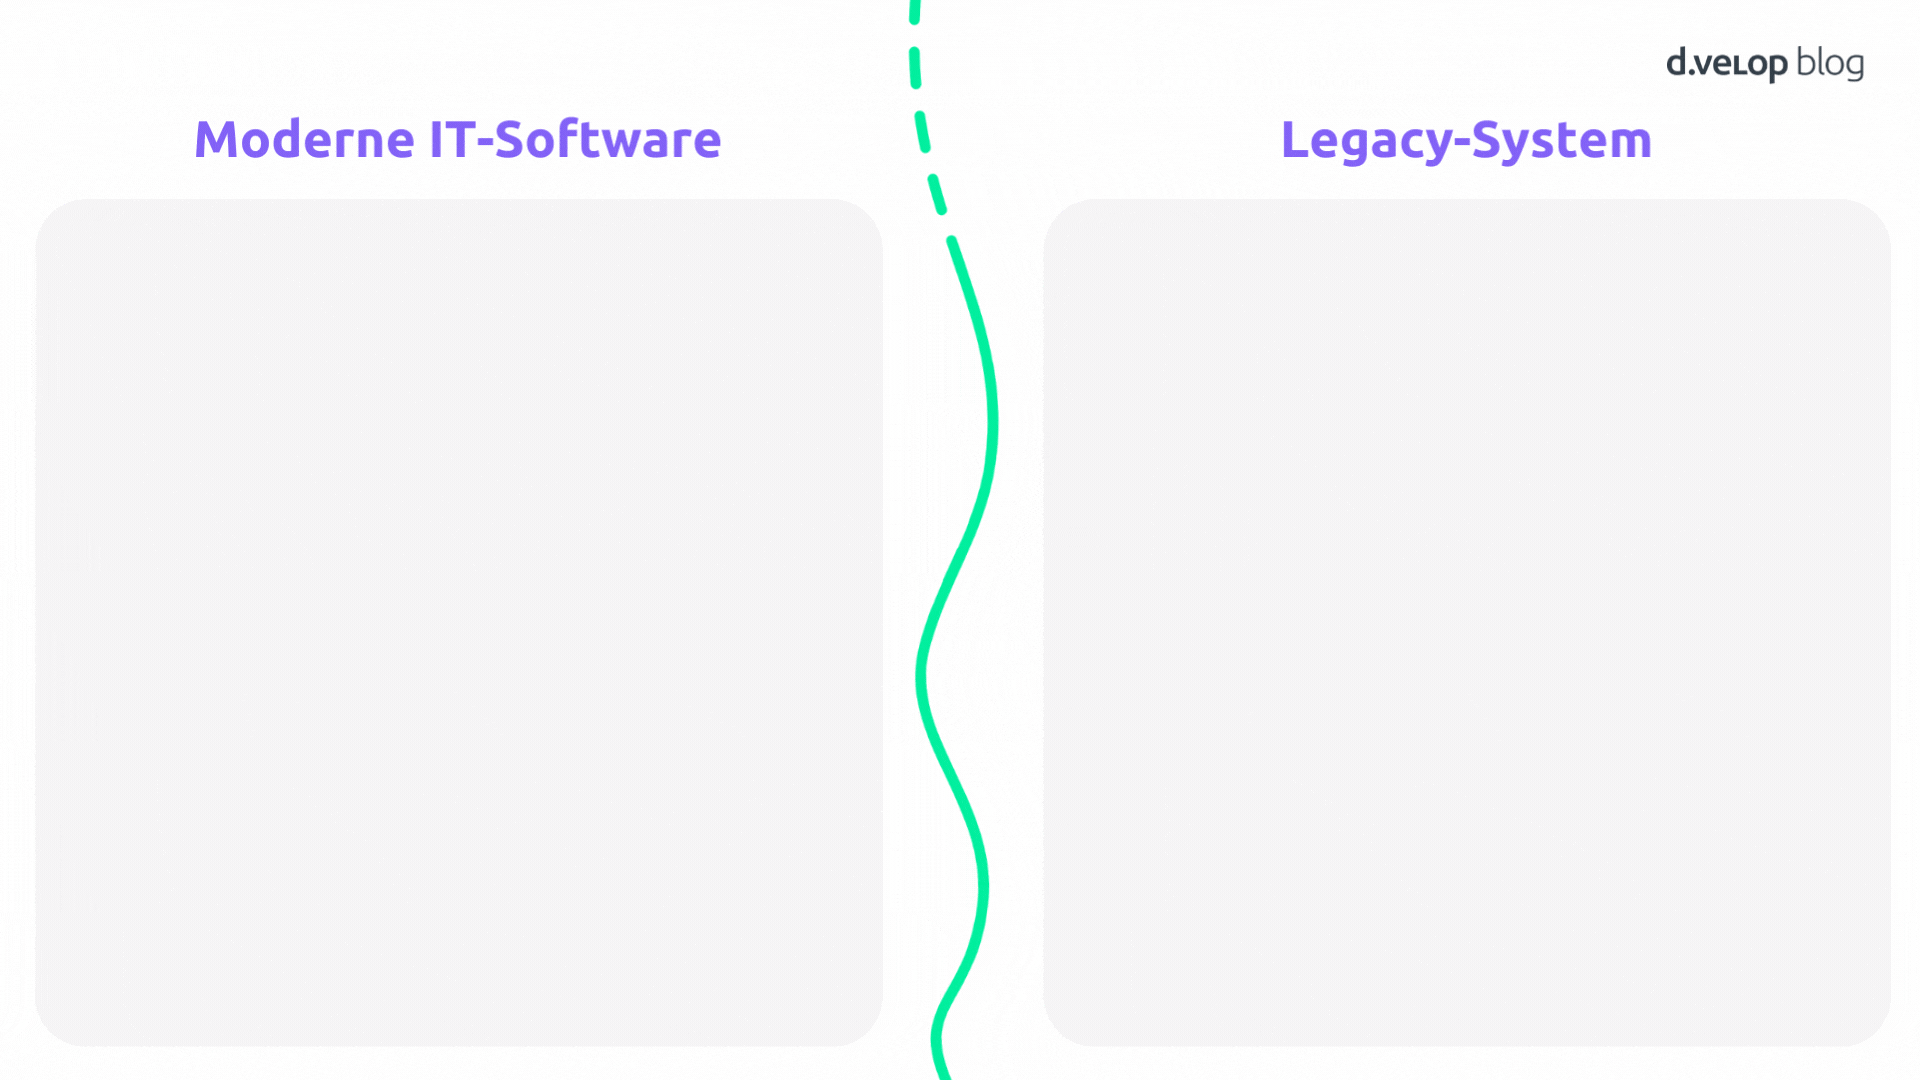 Infografik zeigt den Unterschied zwischen moderner IT-Software und Legacy-Systemen in der IT-Landschaft